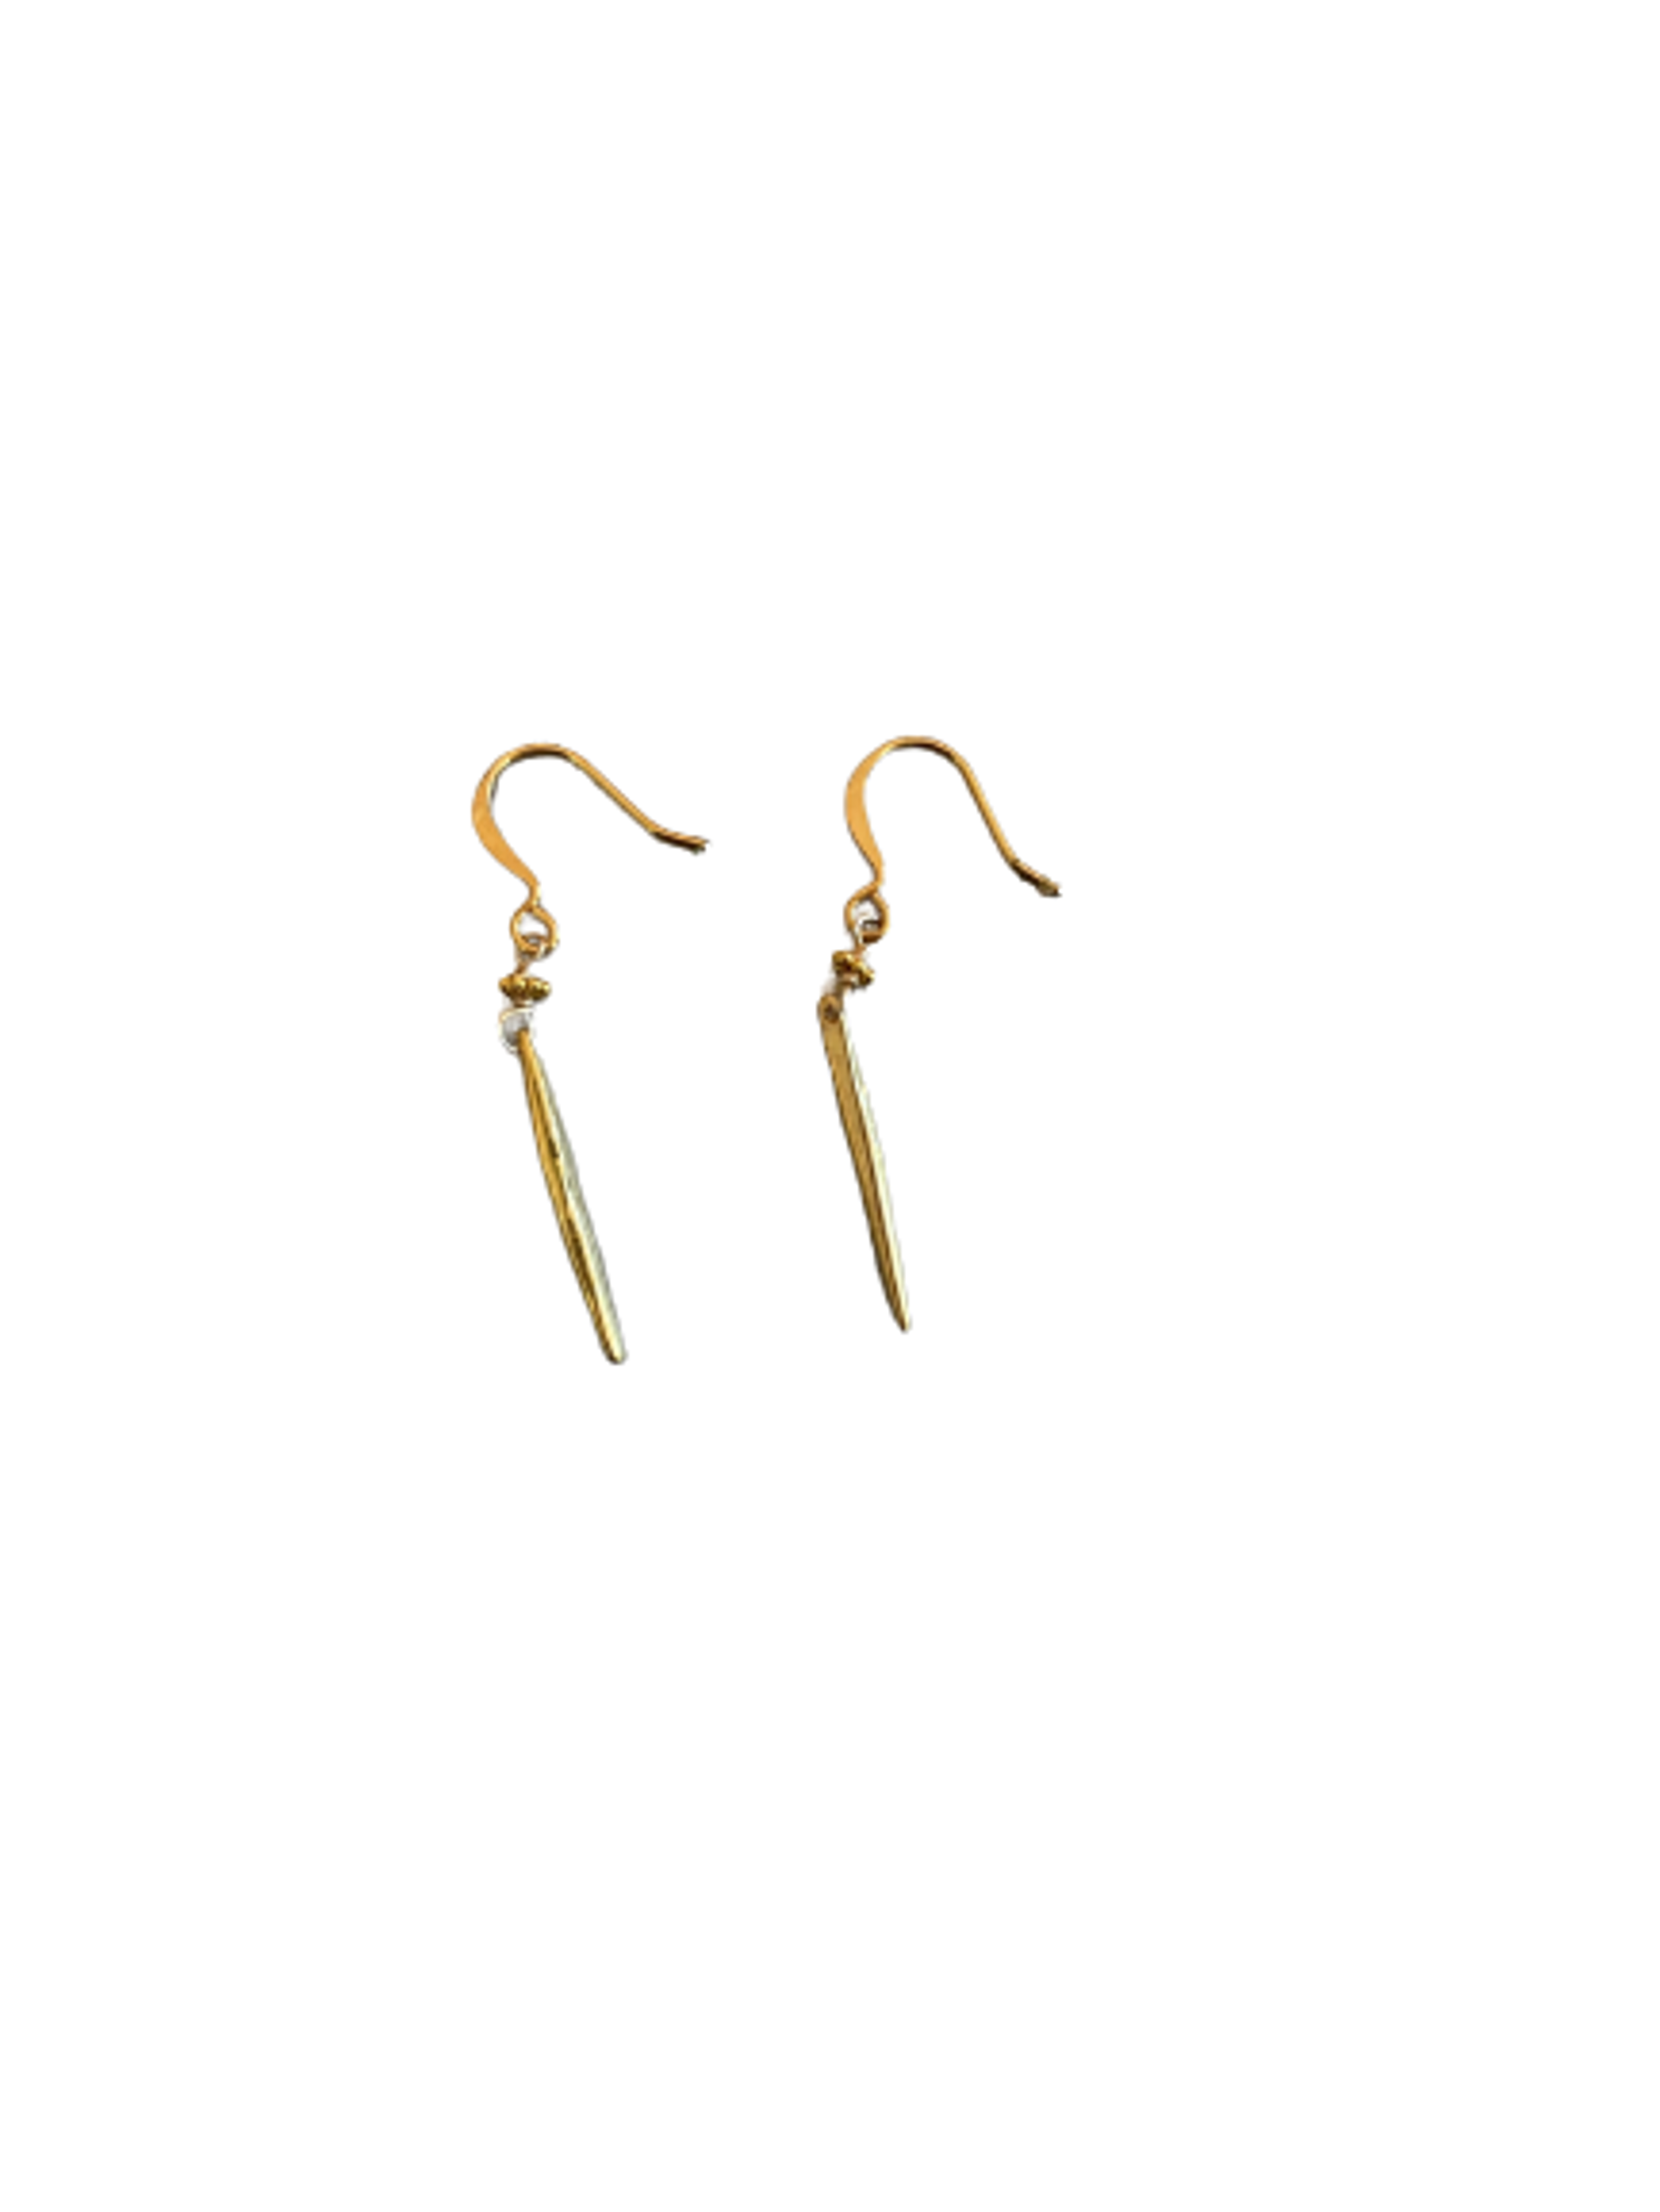 Mini Vermeil “Quill” Spike Earrings by ZinniaLou Jewelry